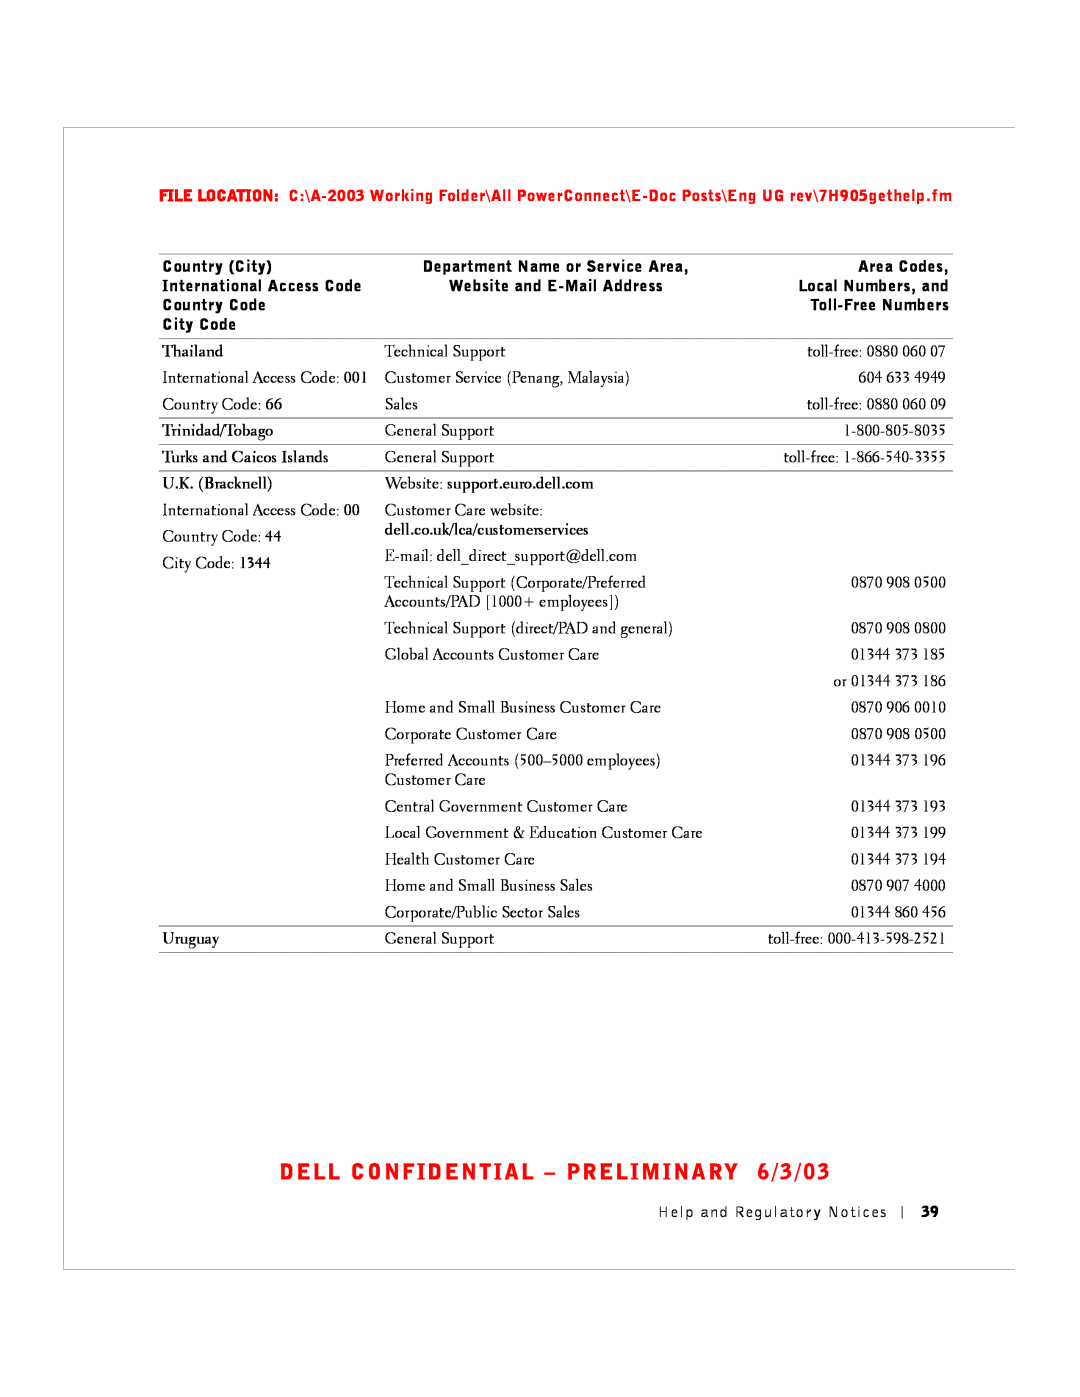 Dell 2016, 2024 manual DELL CONFIDENTIAL - PRELIMINARY 6/3/03, Thailand, Trinidad/Tobago, Turks and Caicos Islands, Uruguay 